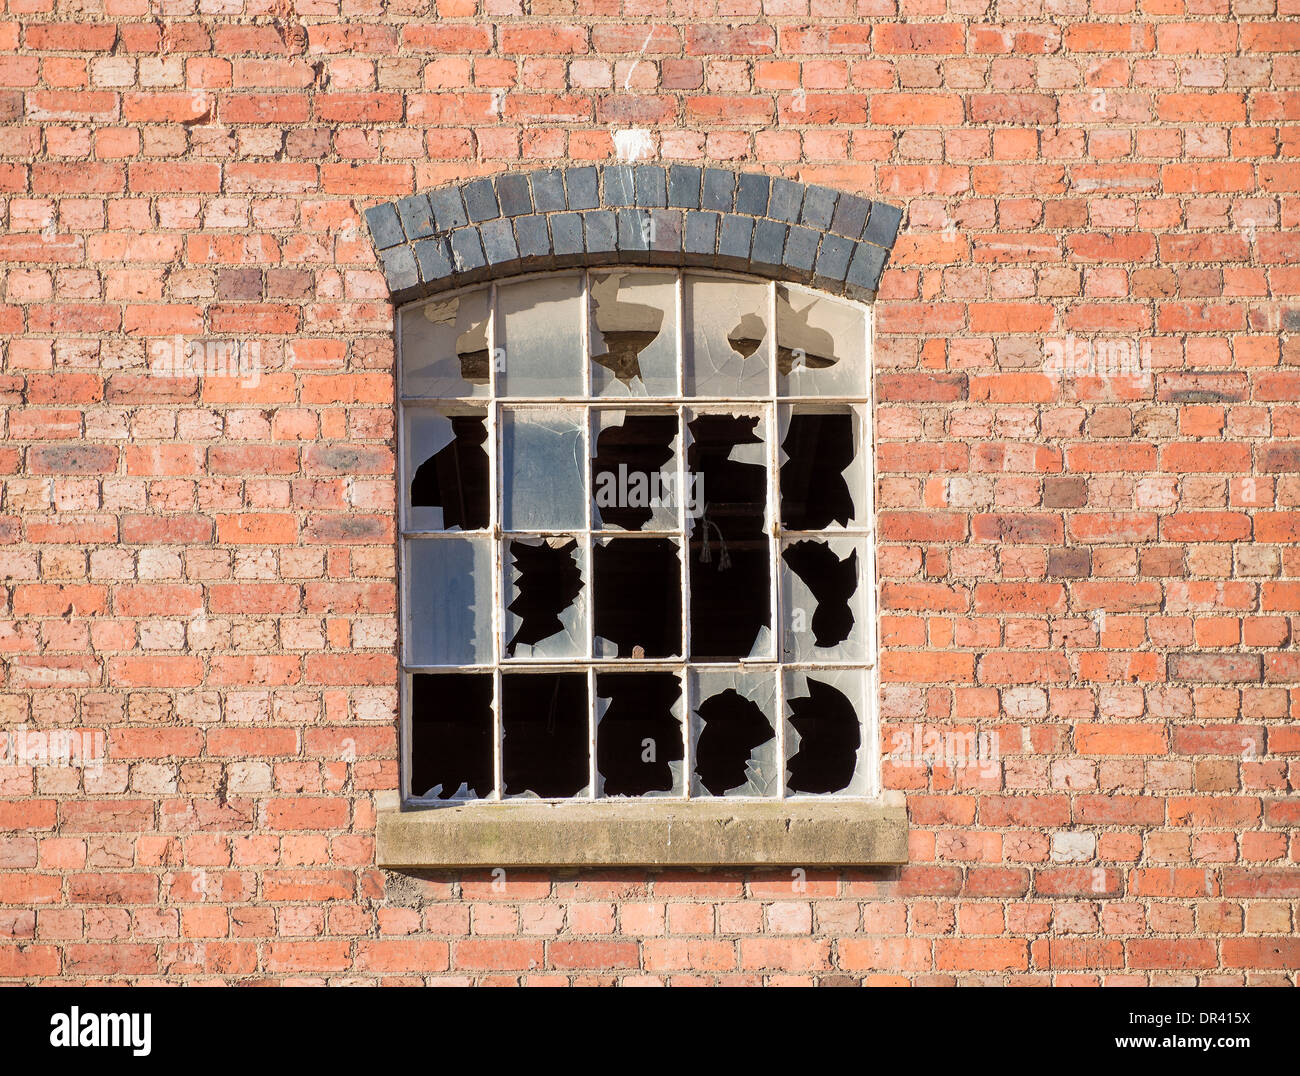 Smashed window panes Stock Photo